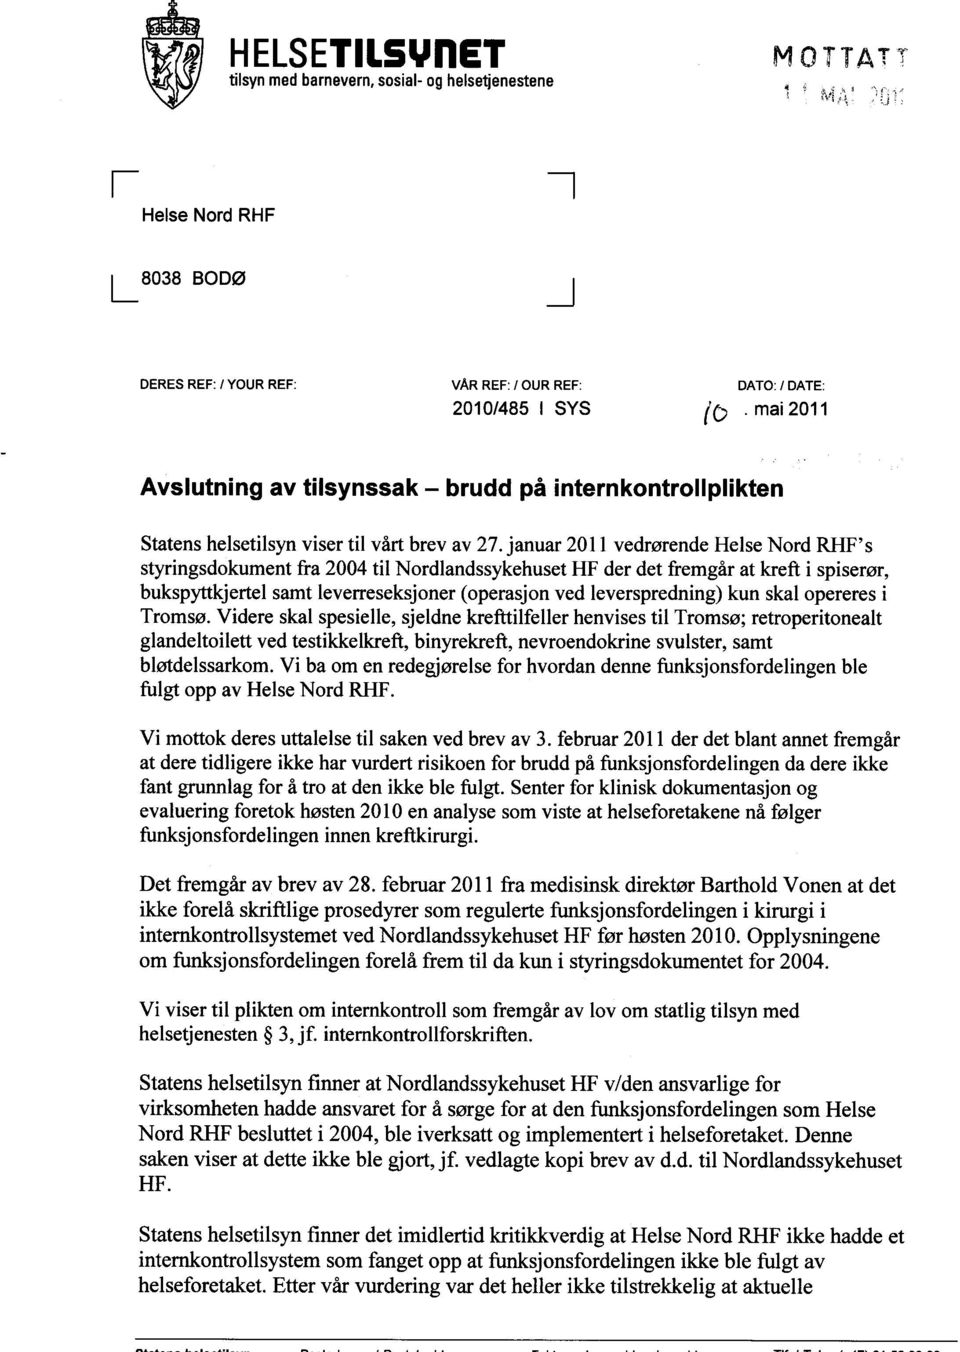 januar 2011 vedrørende Helse Nord RHF's styringsdokument fra 2004 til Nordlandssykehuset HF der det fremgår at kreft i spiserør, bukspyttkjertel samt leverreseksjoner (operasjon ved leverspredning)